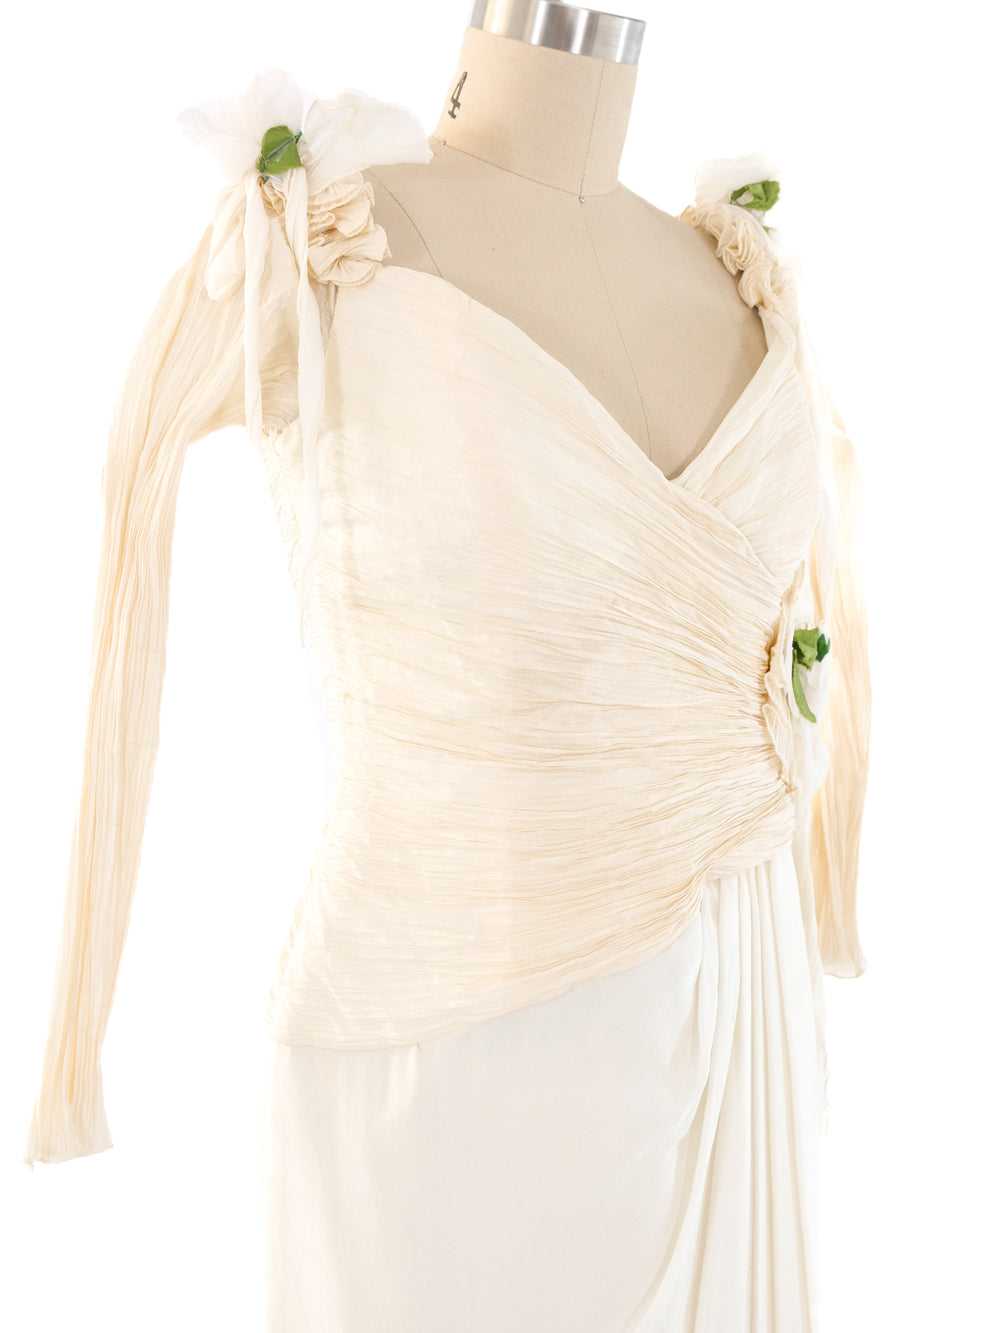 Zandra Rhodes Floral Embellished Dress - image 3